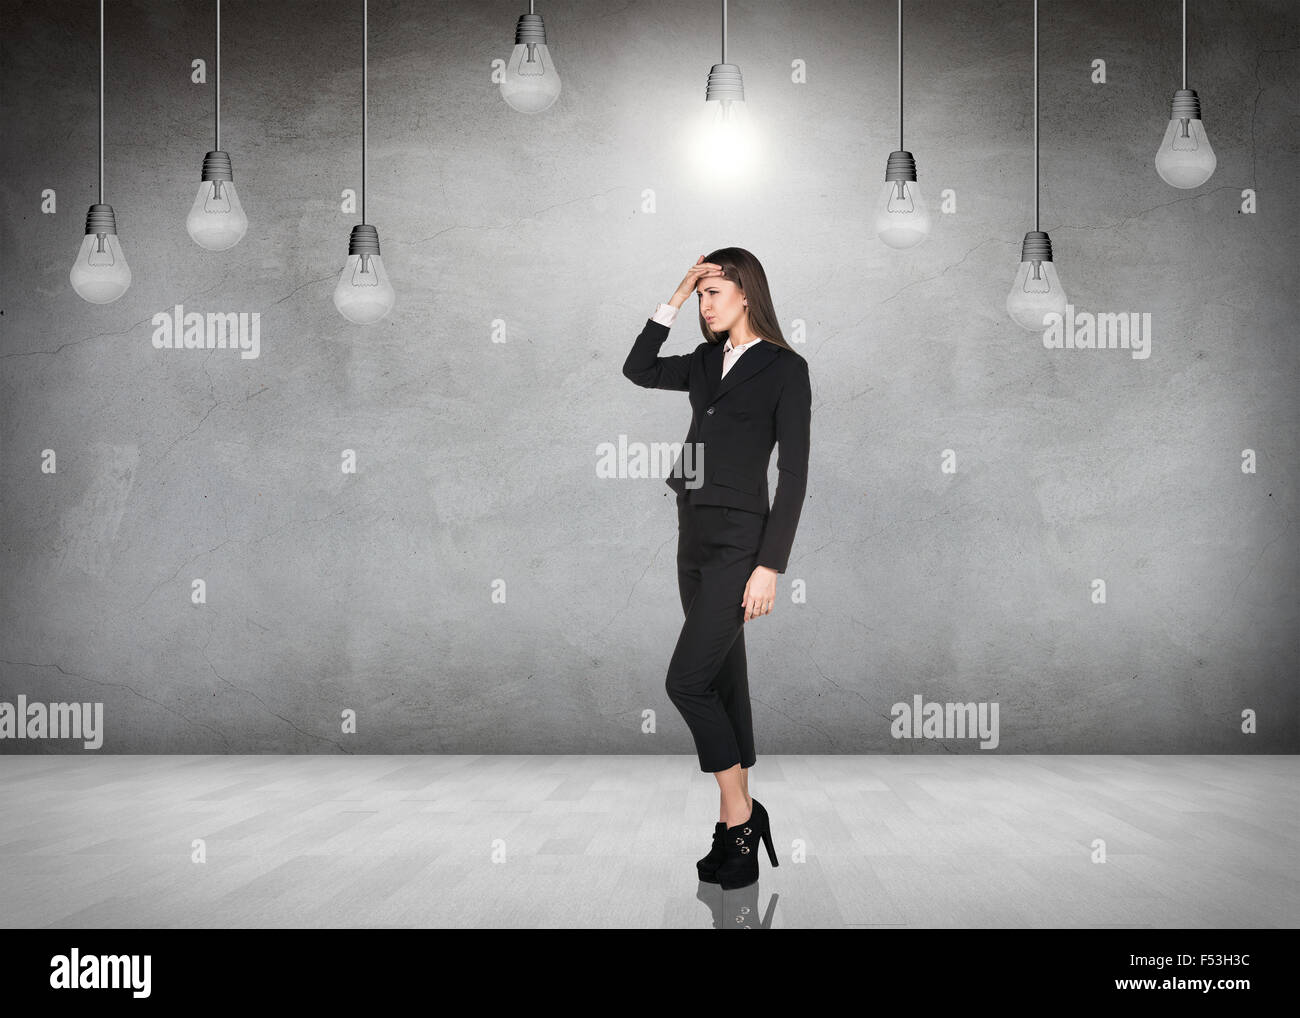 Femme stnads d'affaires dans une salle grise avec ampoules suspendues Banque D'Images